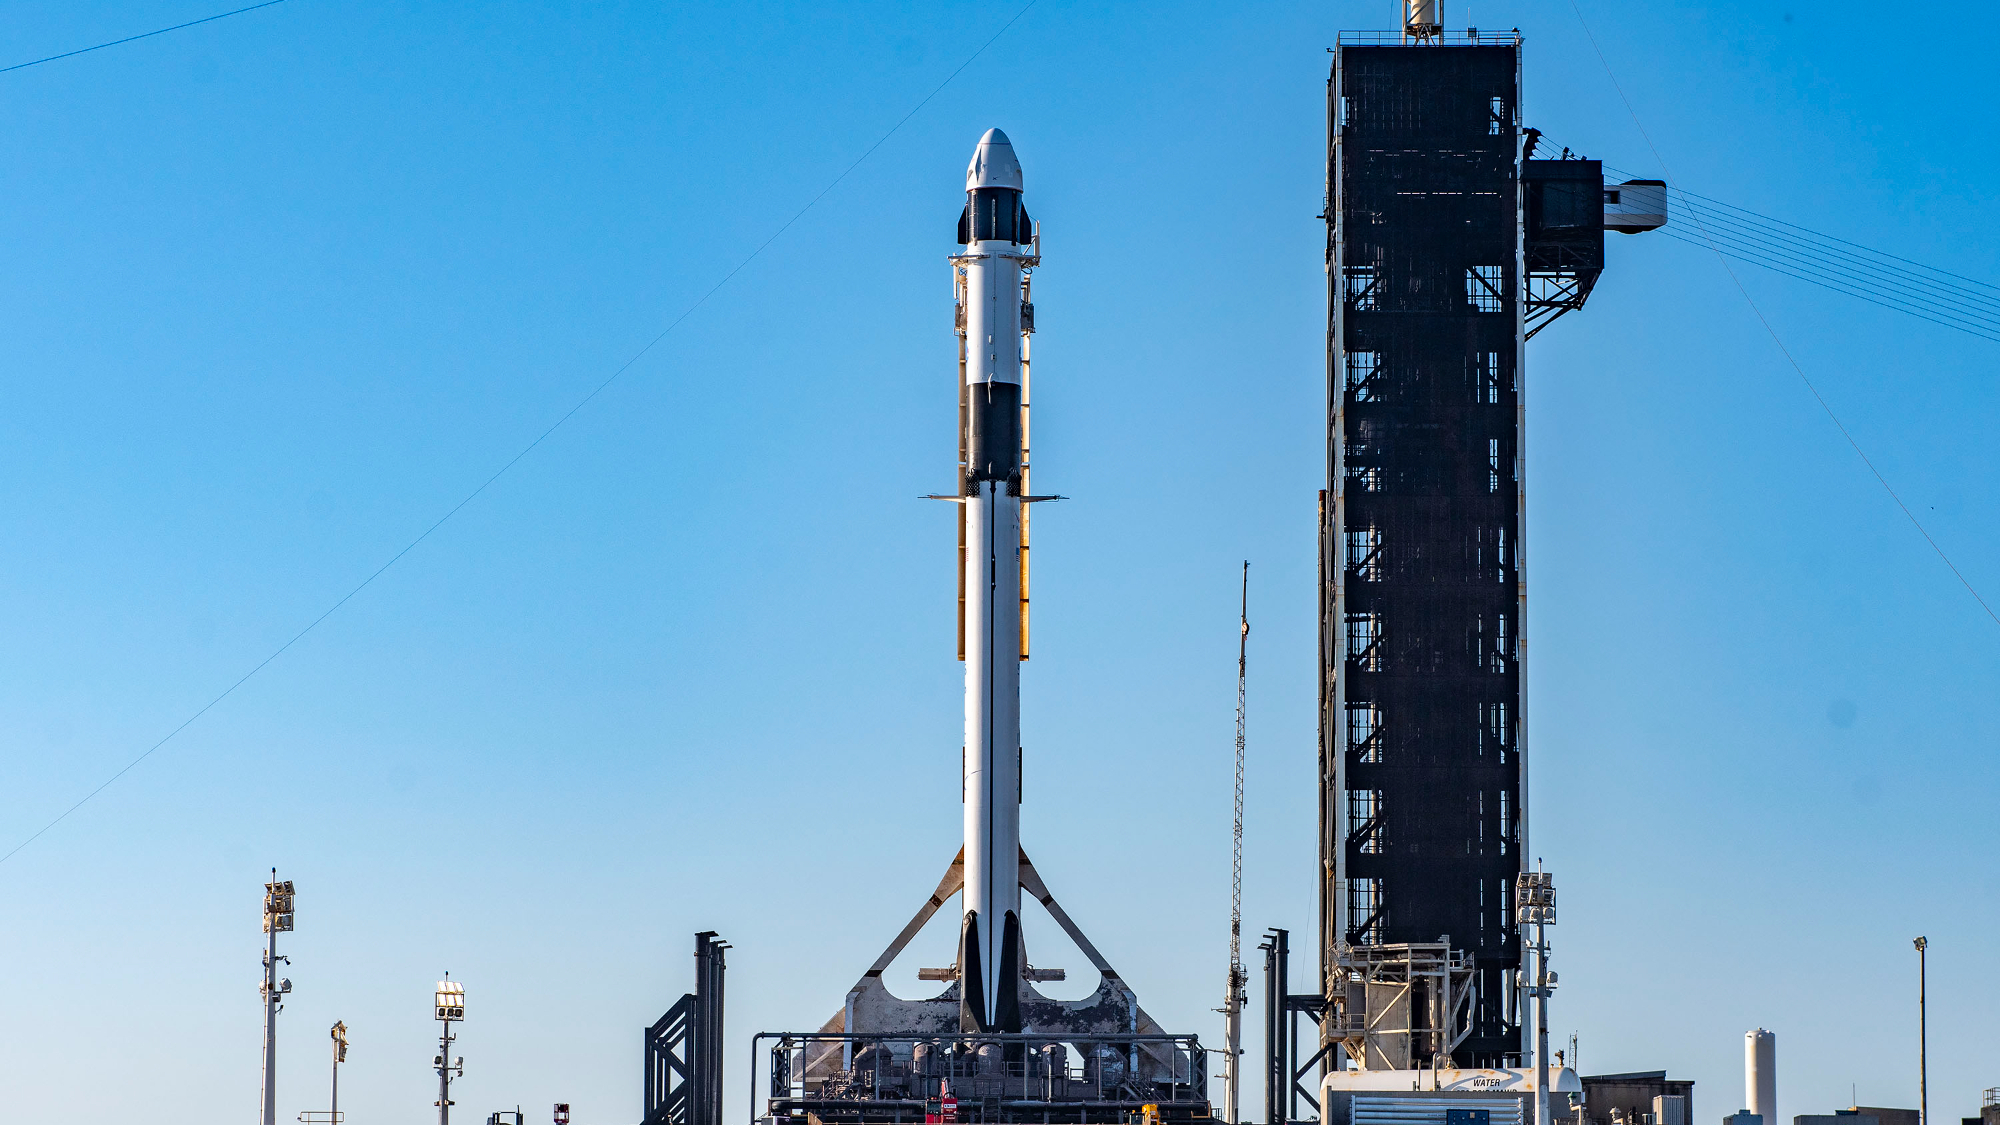 Fusée noire et blanche surmontée d'un support de capsule blanc sur la rampe de lancement avec un ciel bleu en arrière-plan.